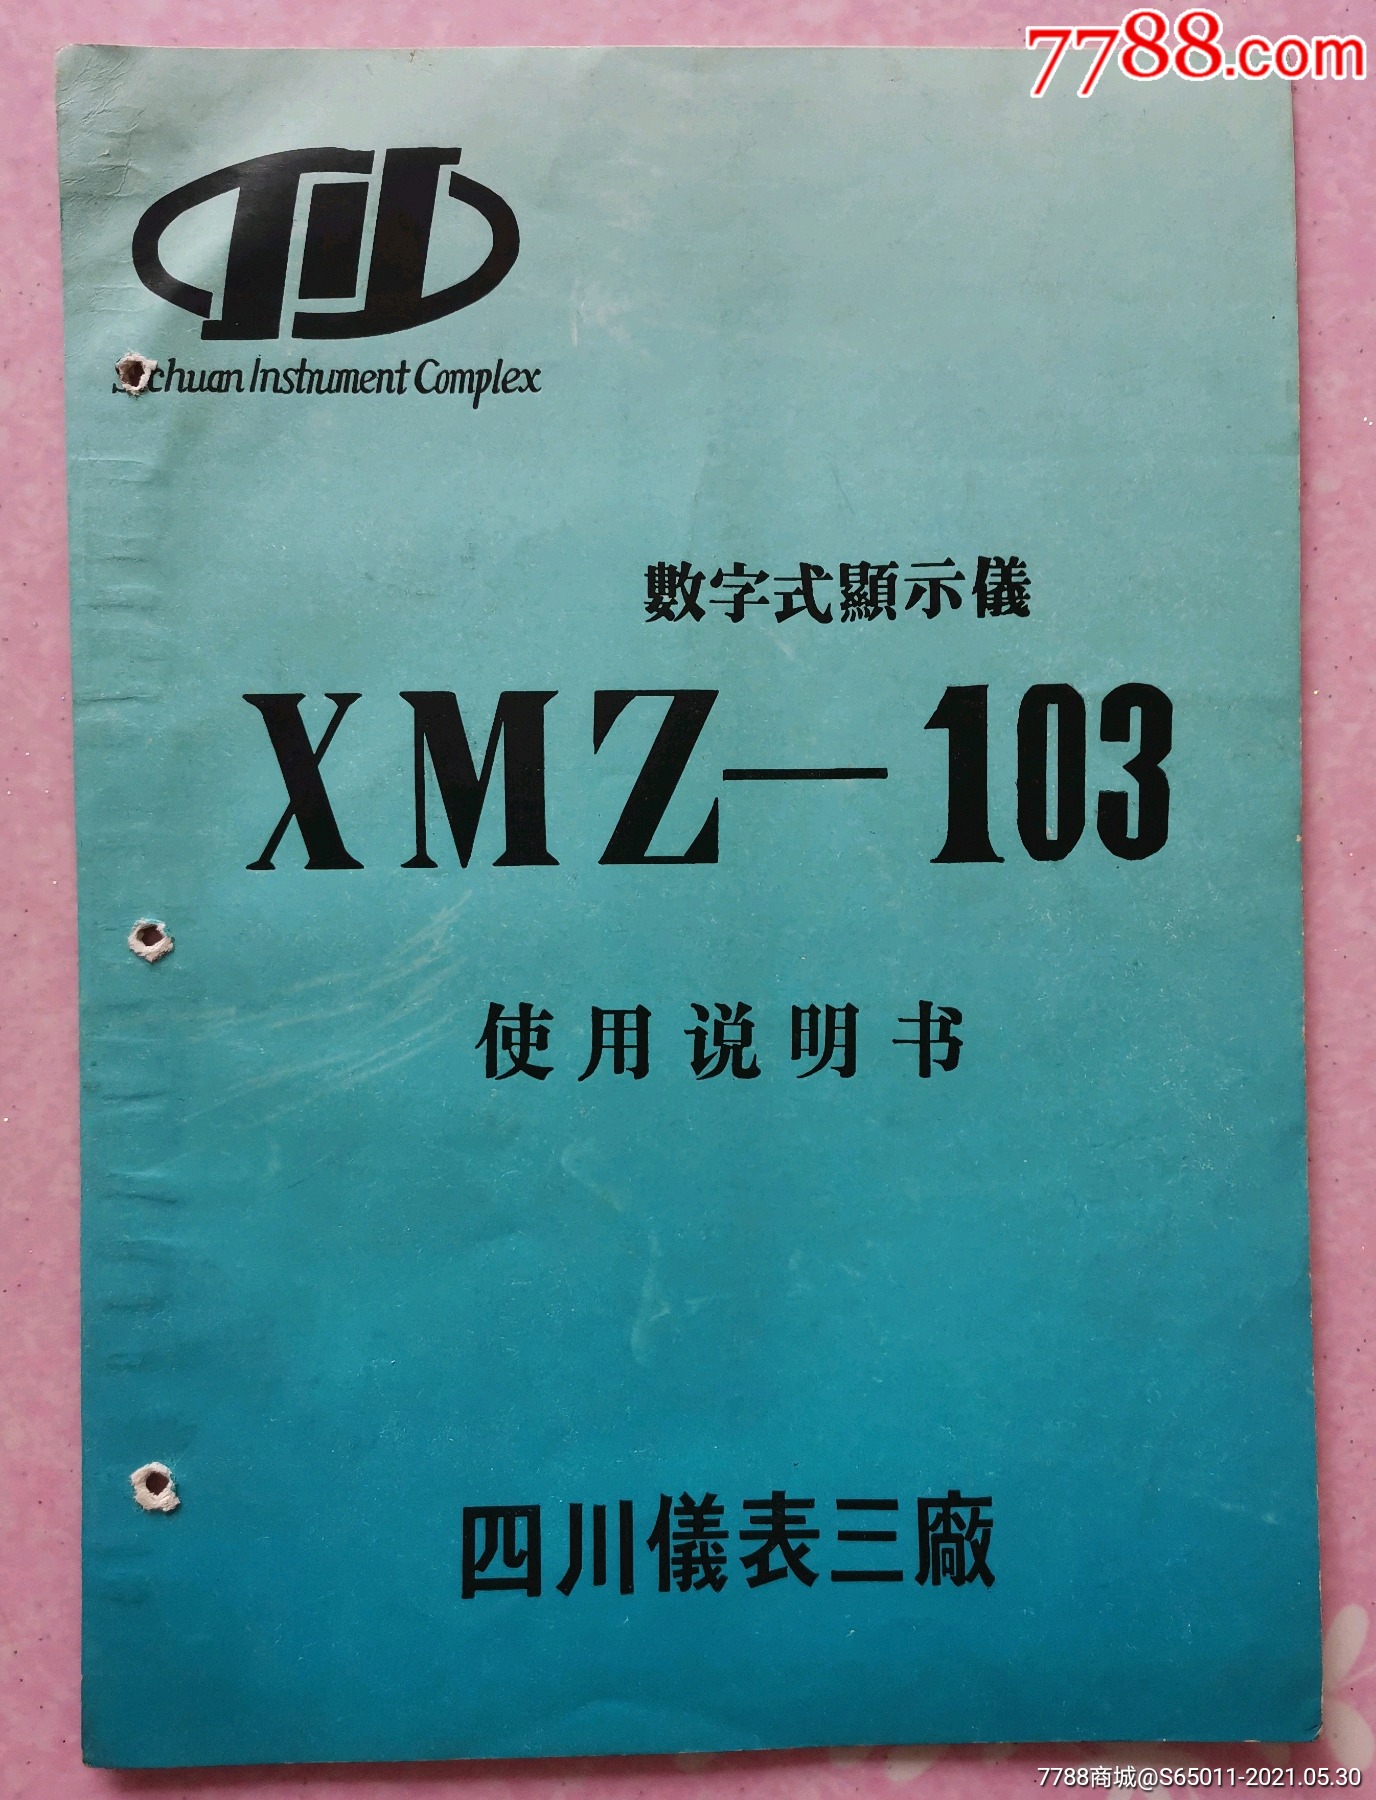 四川仪表三厂xmz101121102122数字式温度显示调节仪使用说明书